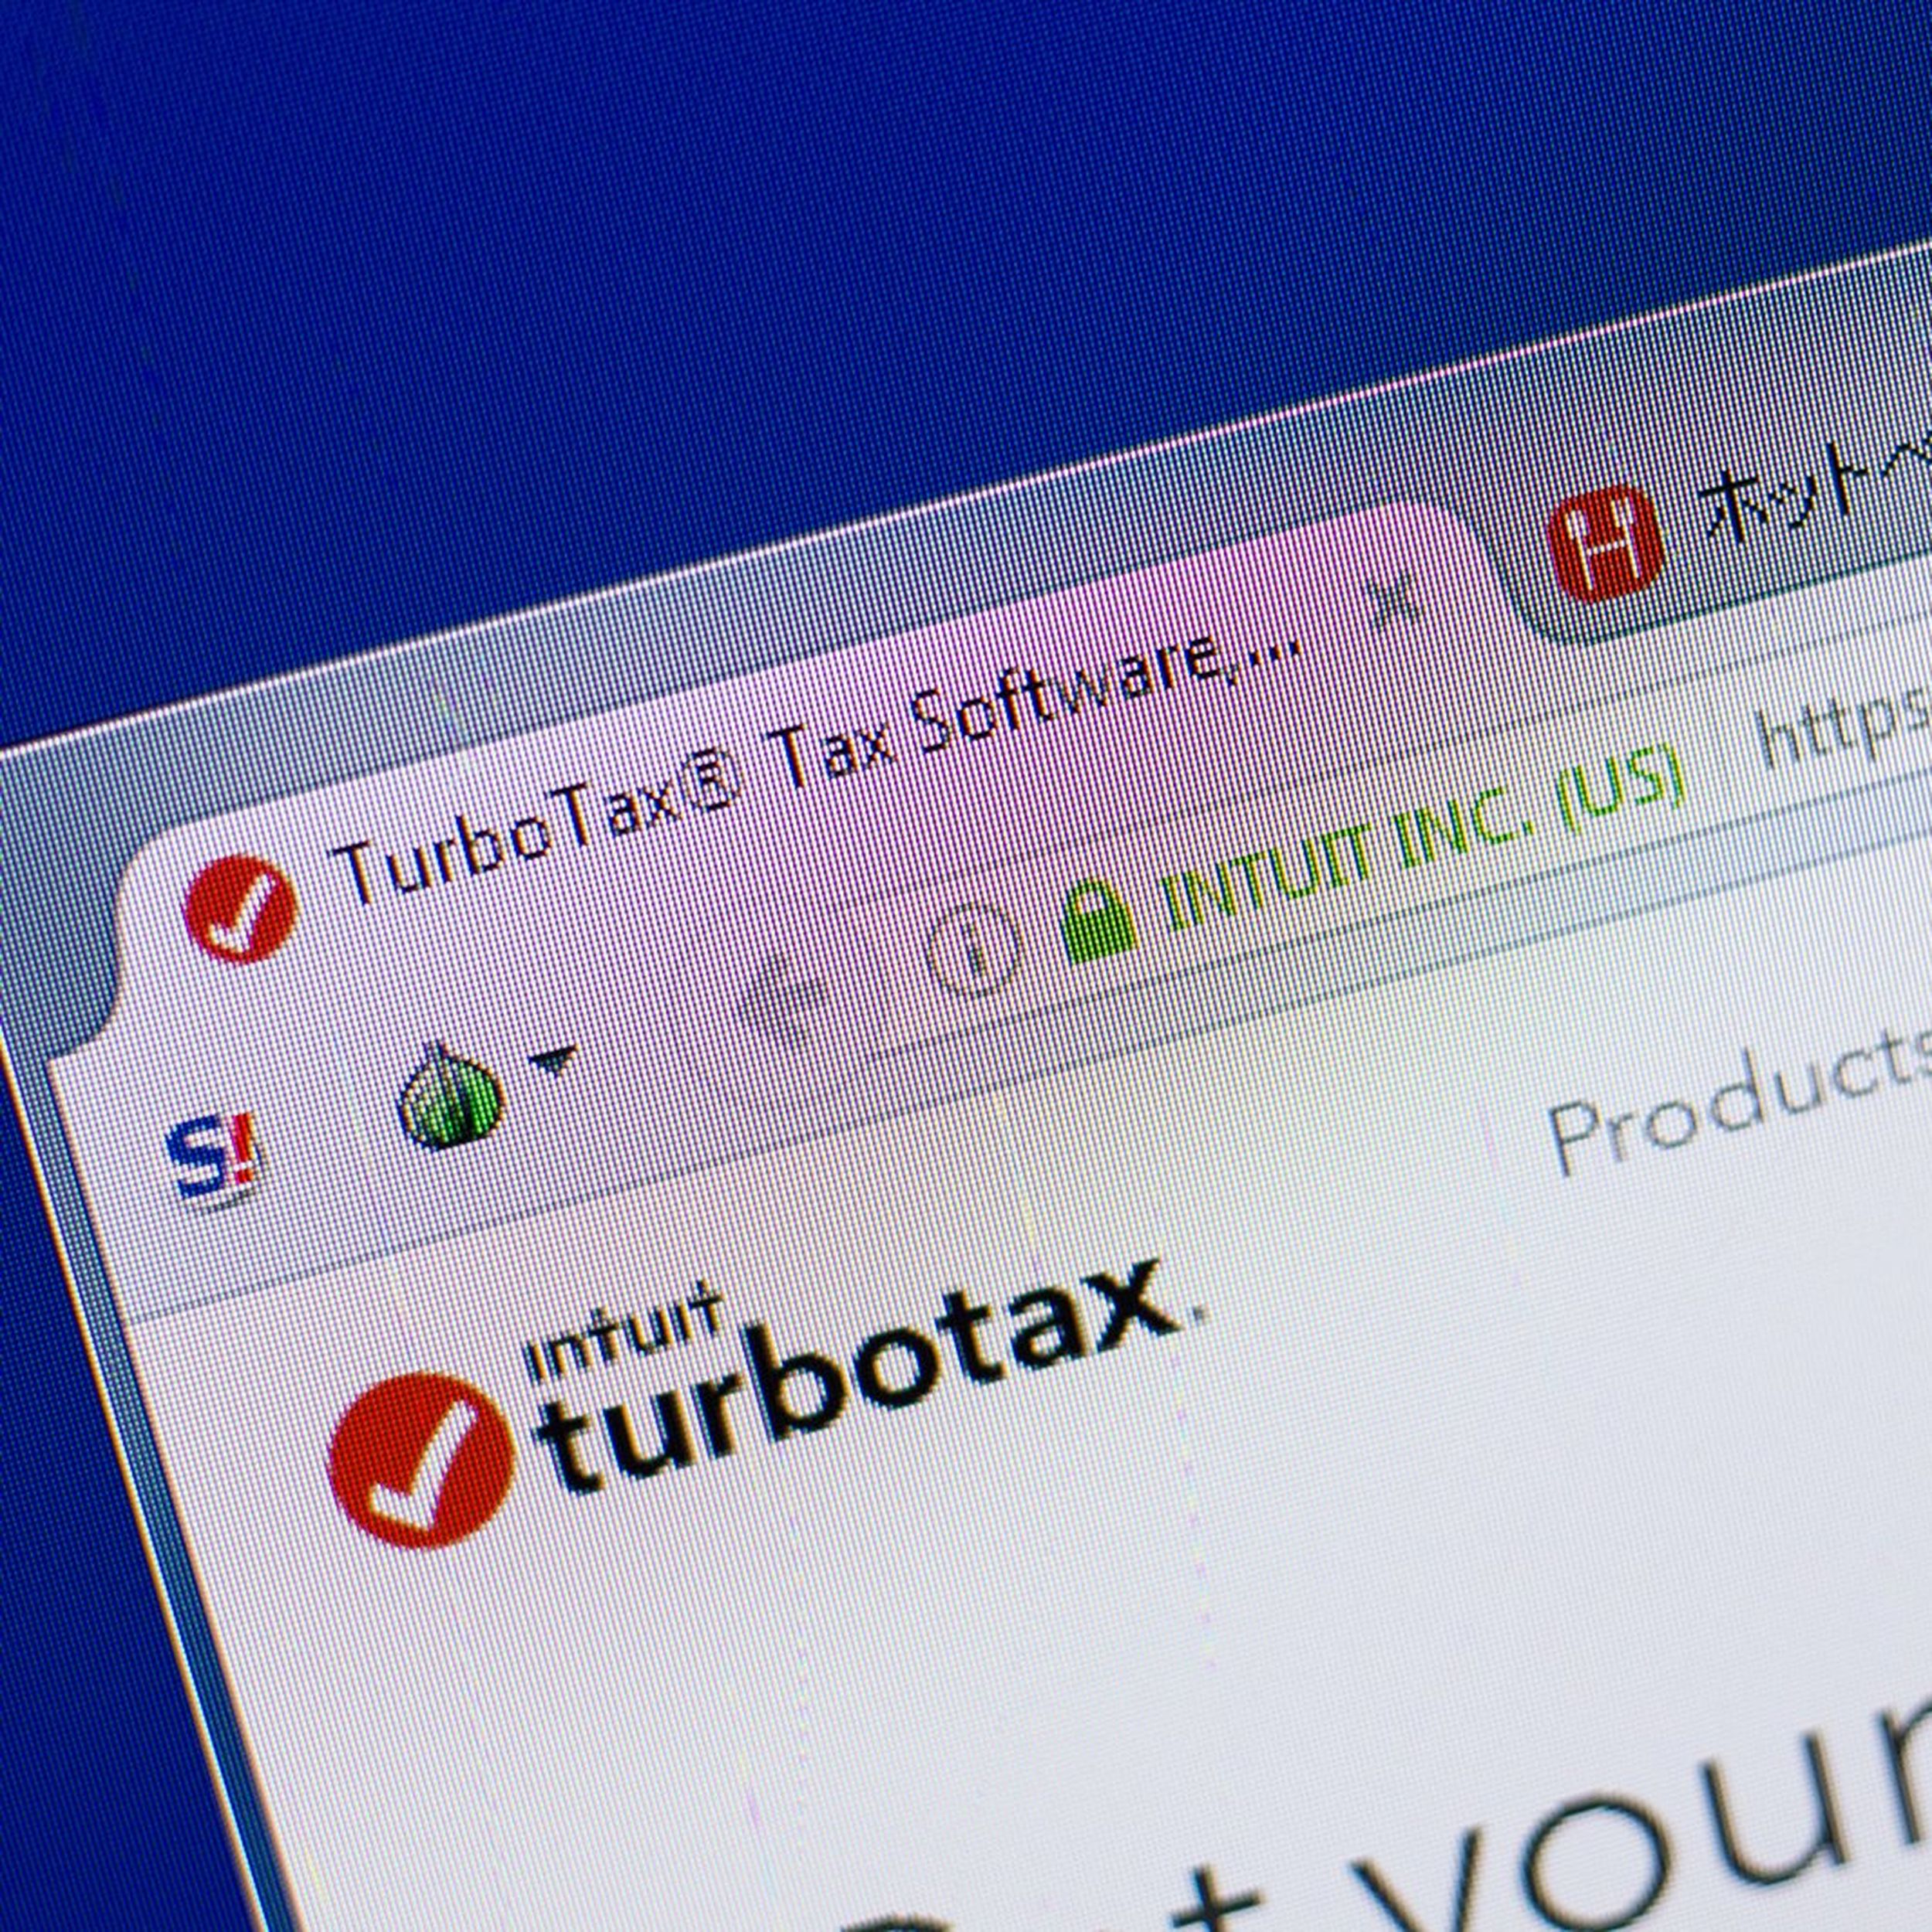 Turbo Tax 2022 Software